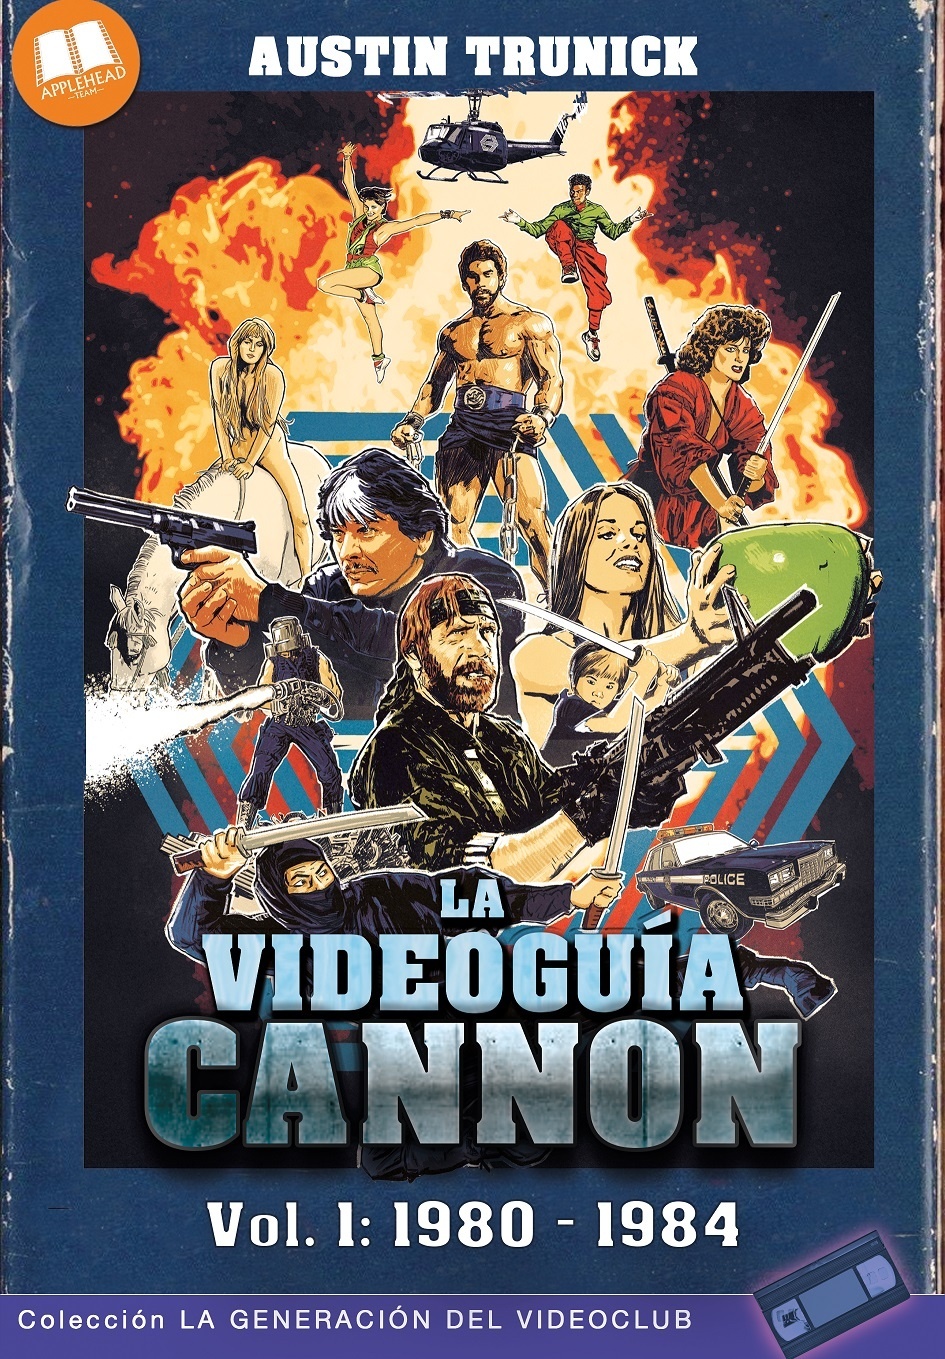 Videoguía Cannon vol. 1: 1980 - 1984. 